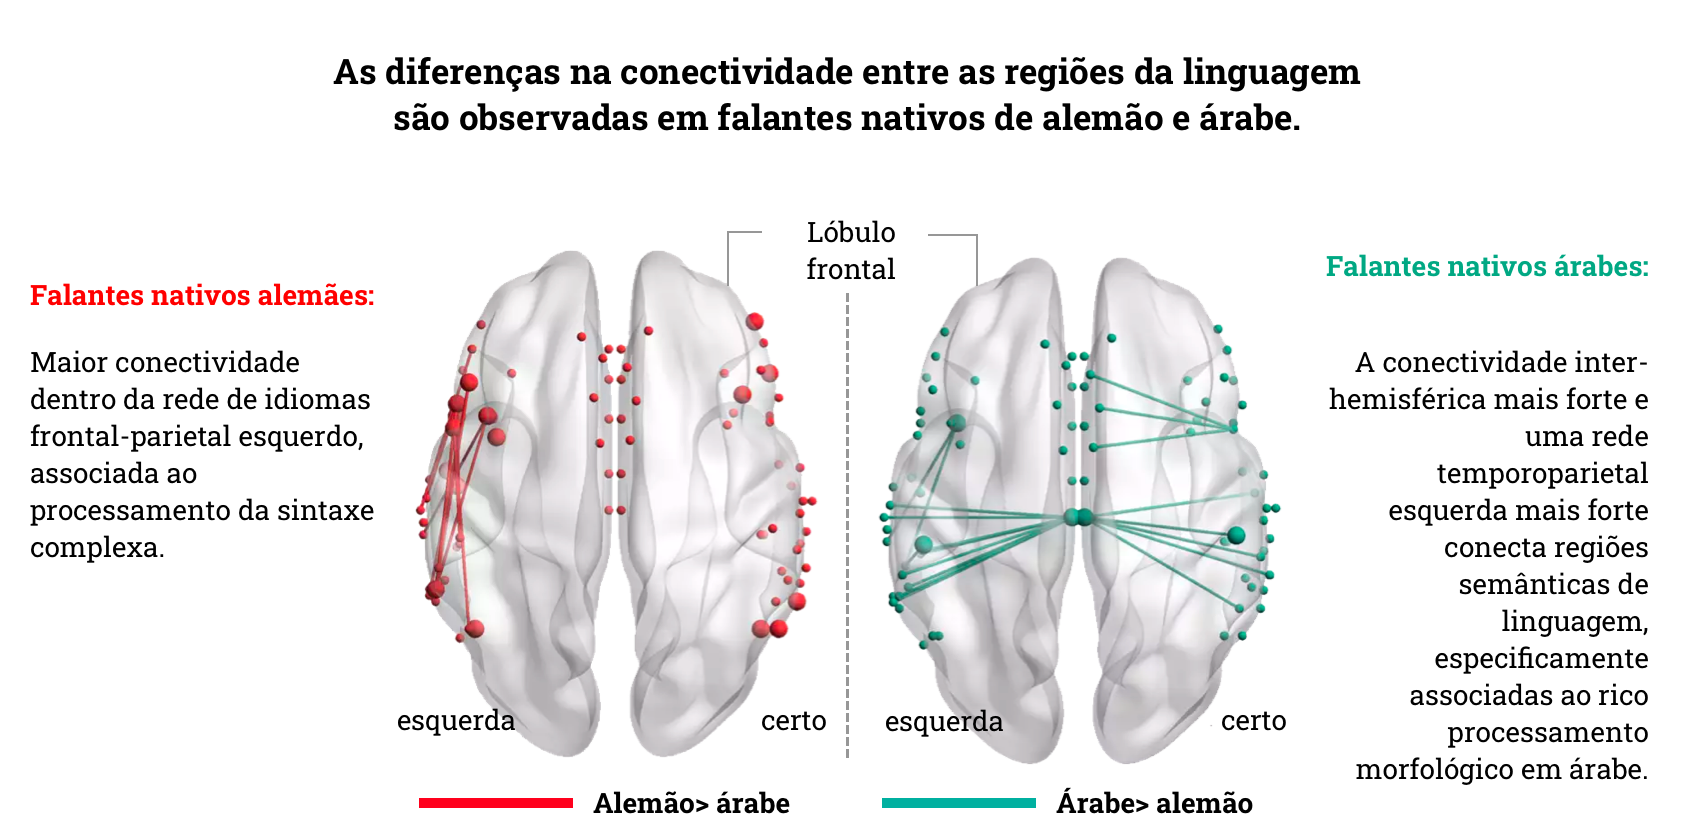 Ligação avançada no cérebro de falantes nativos de alemão e árabe representada num mapa